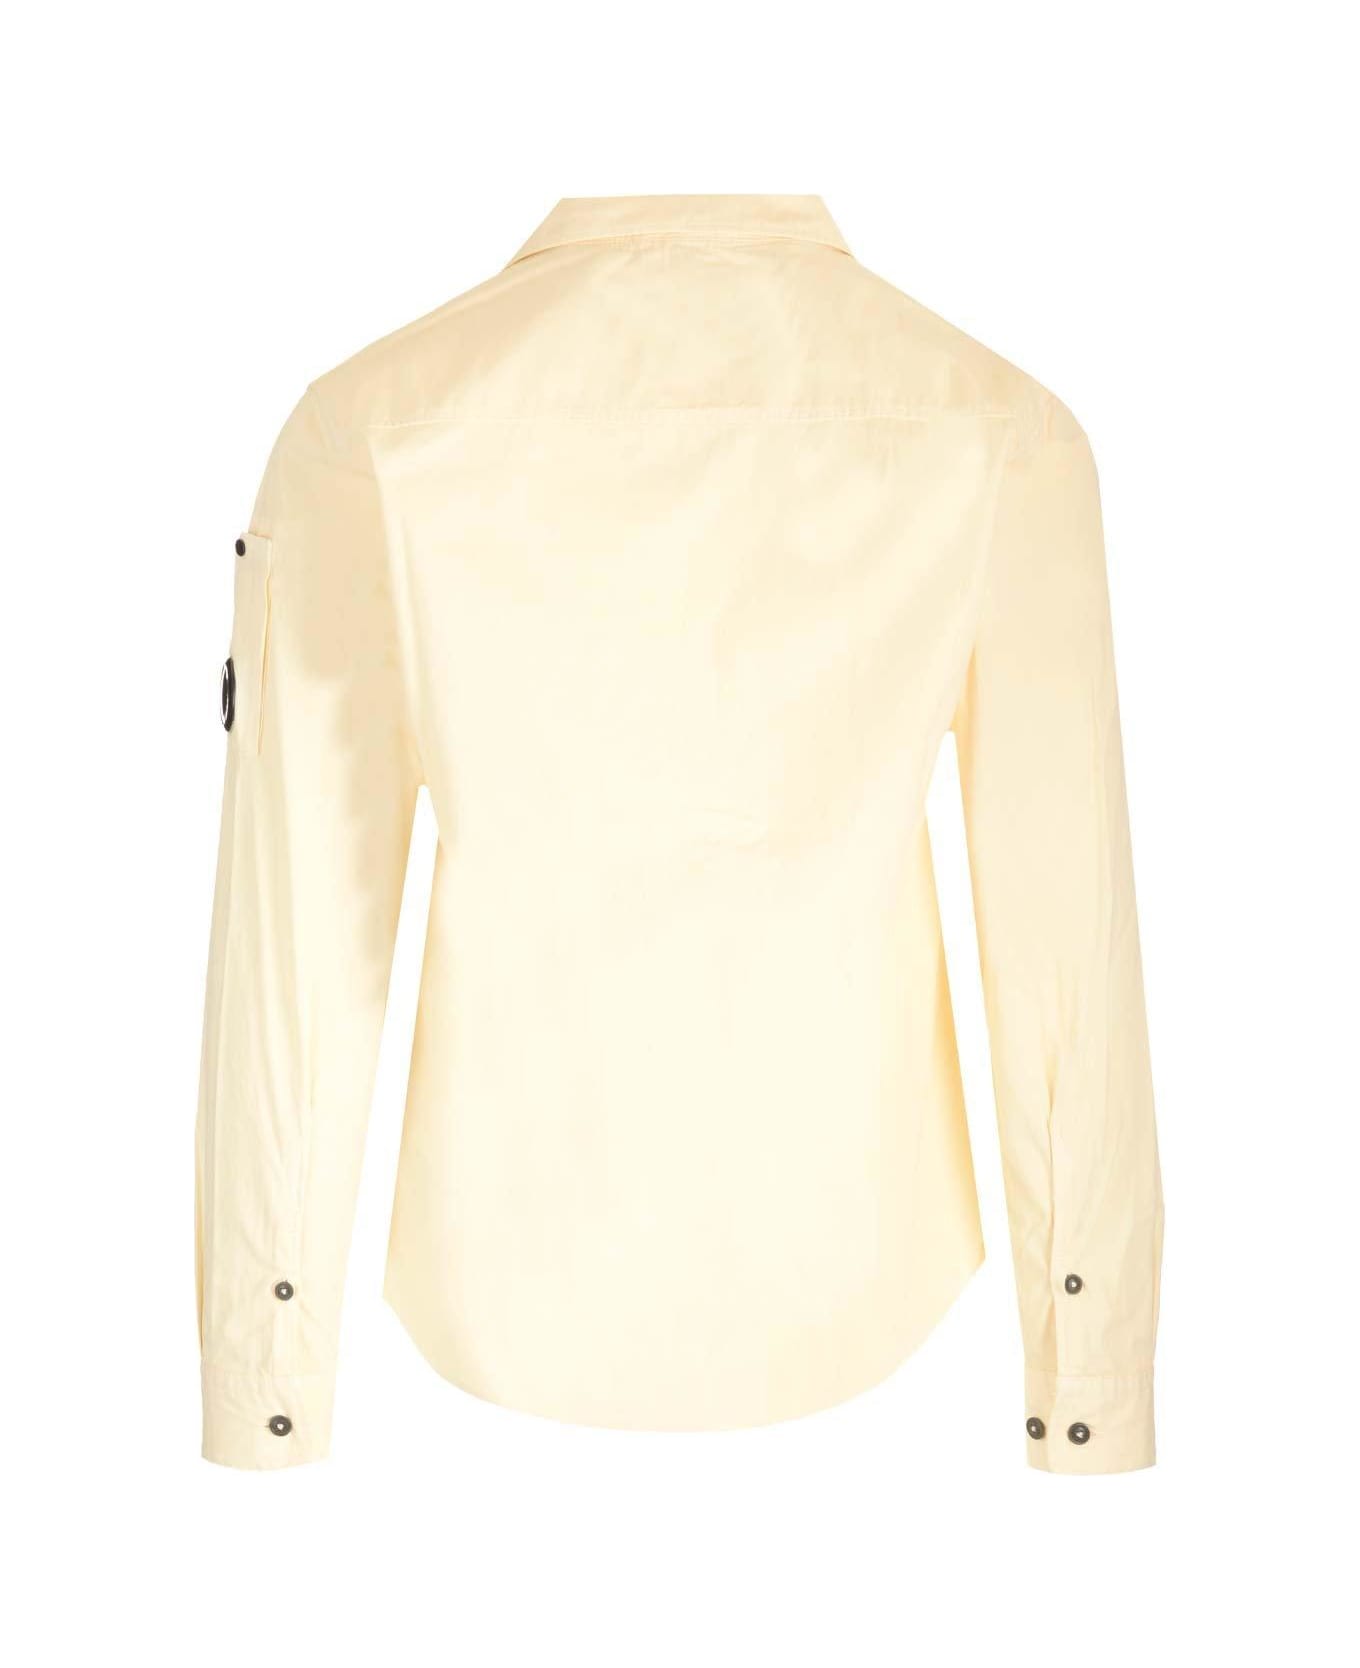 C.P. Company Zip Up Collared Shirt - White